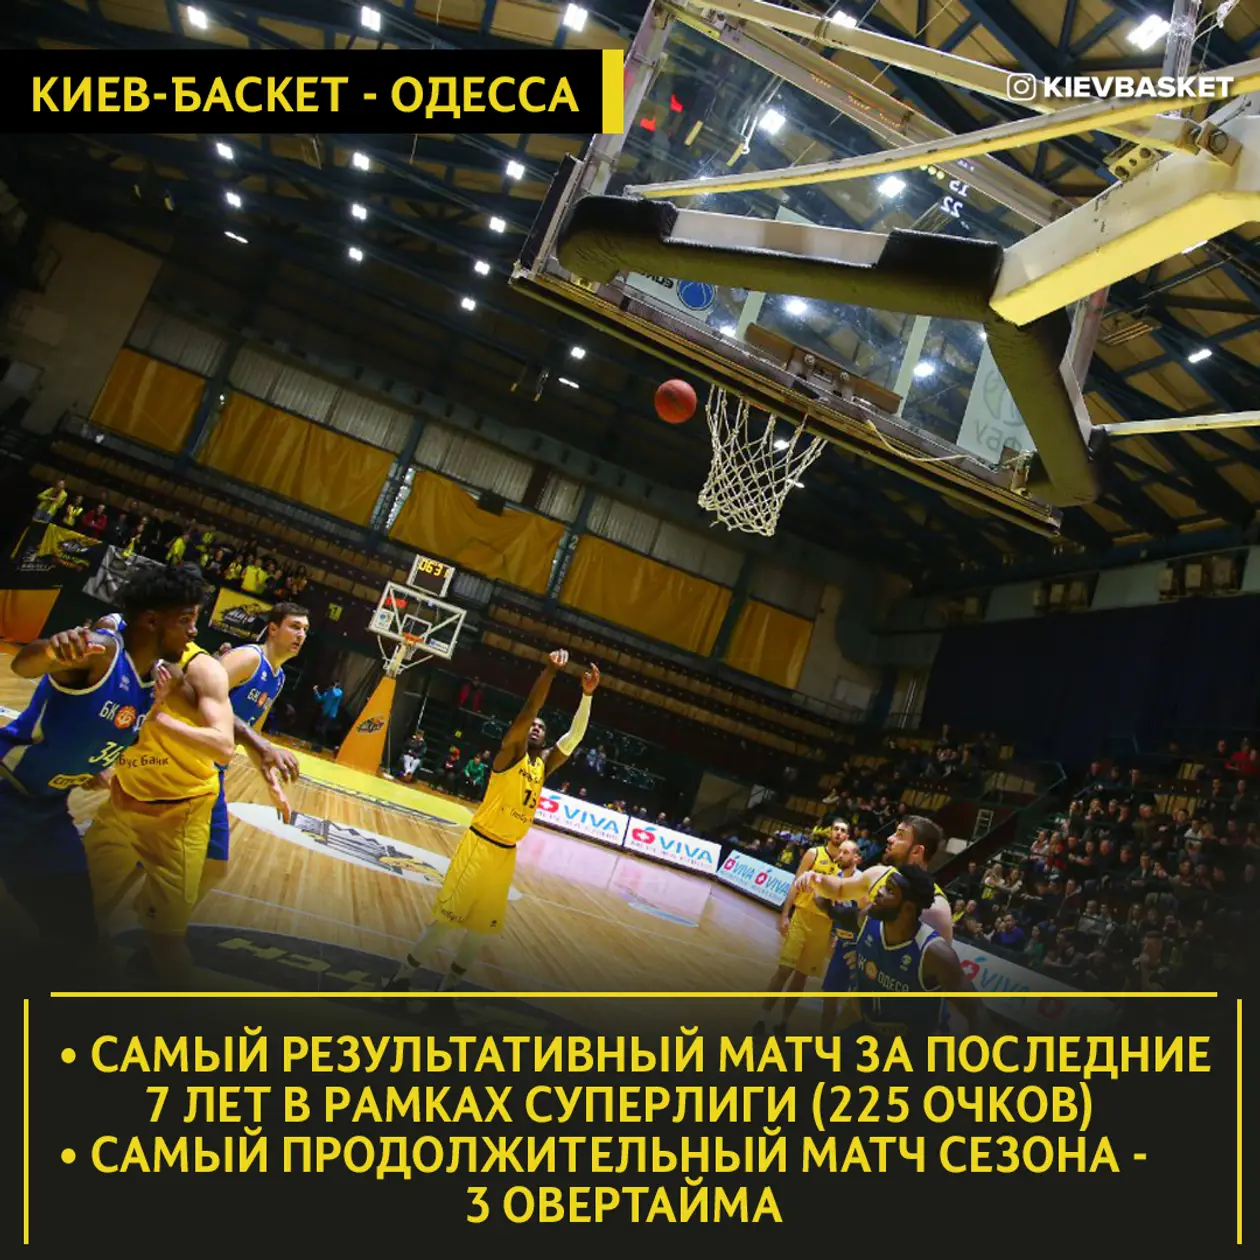 Исторический поединок «Киев-Баскета» и «Одессы» как лишний повод всем обратить внимание на Суперлигу